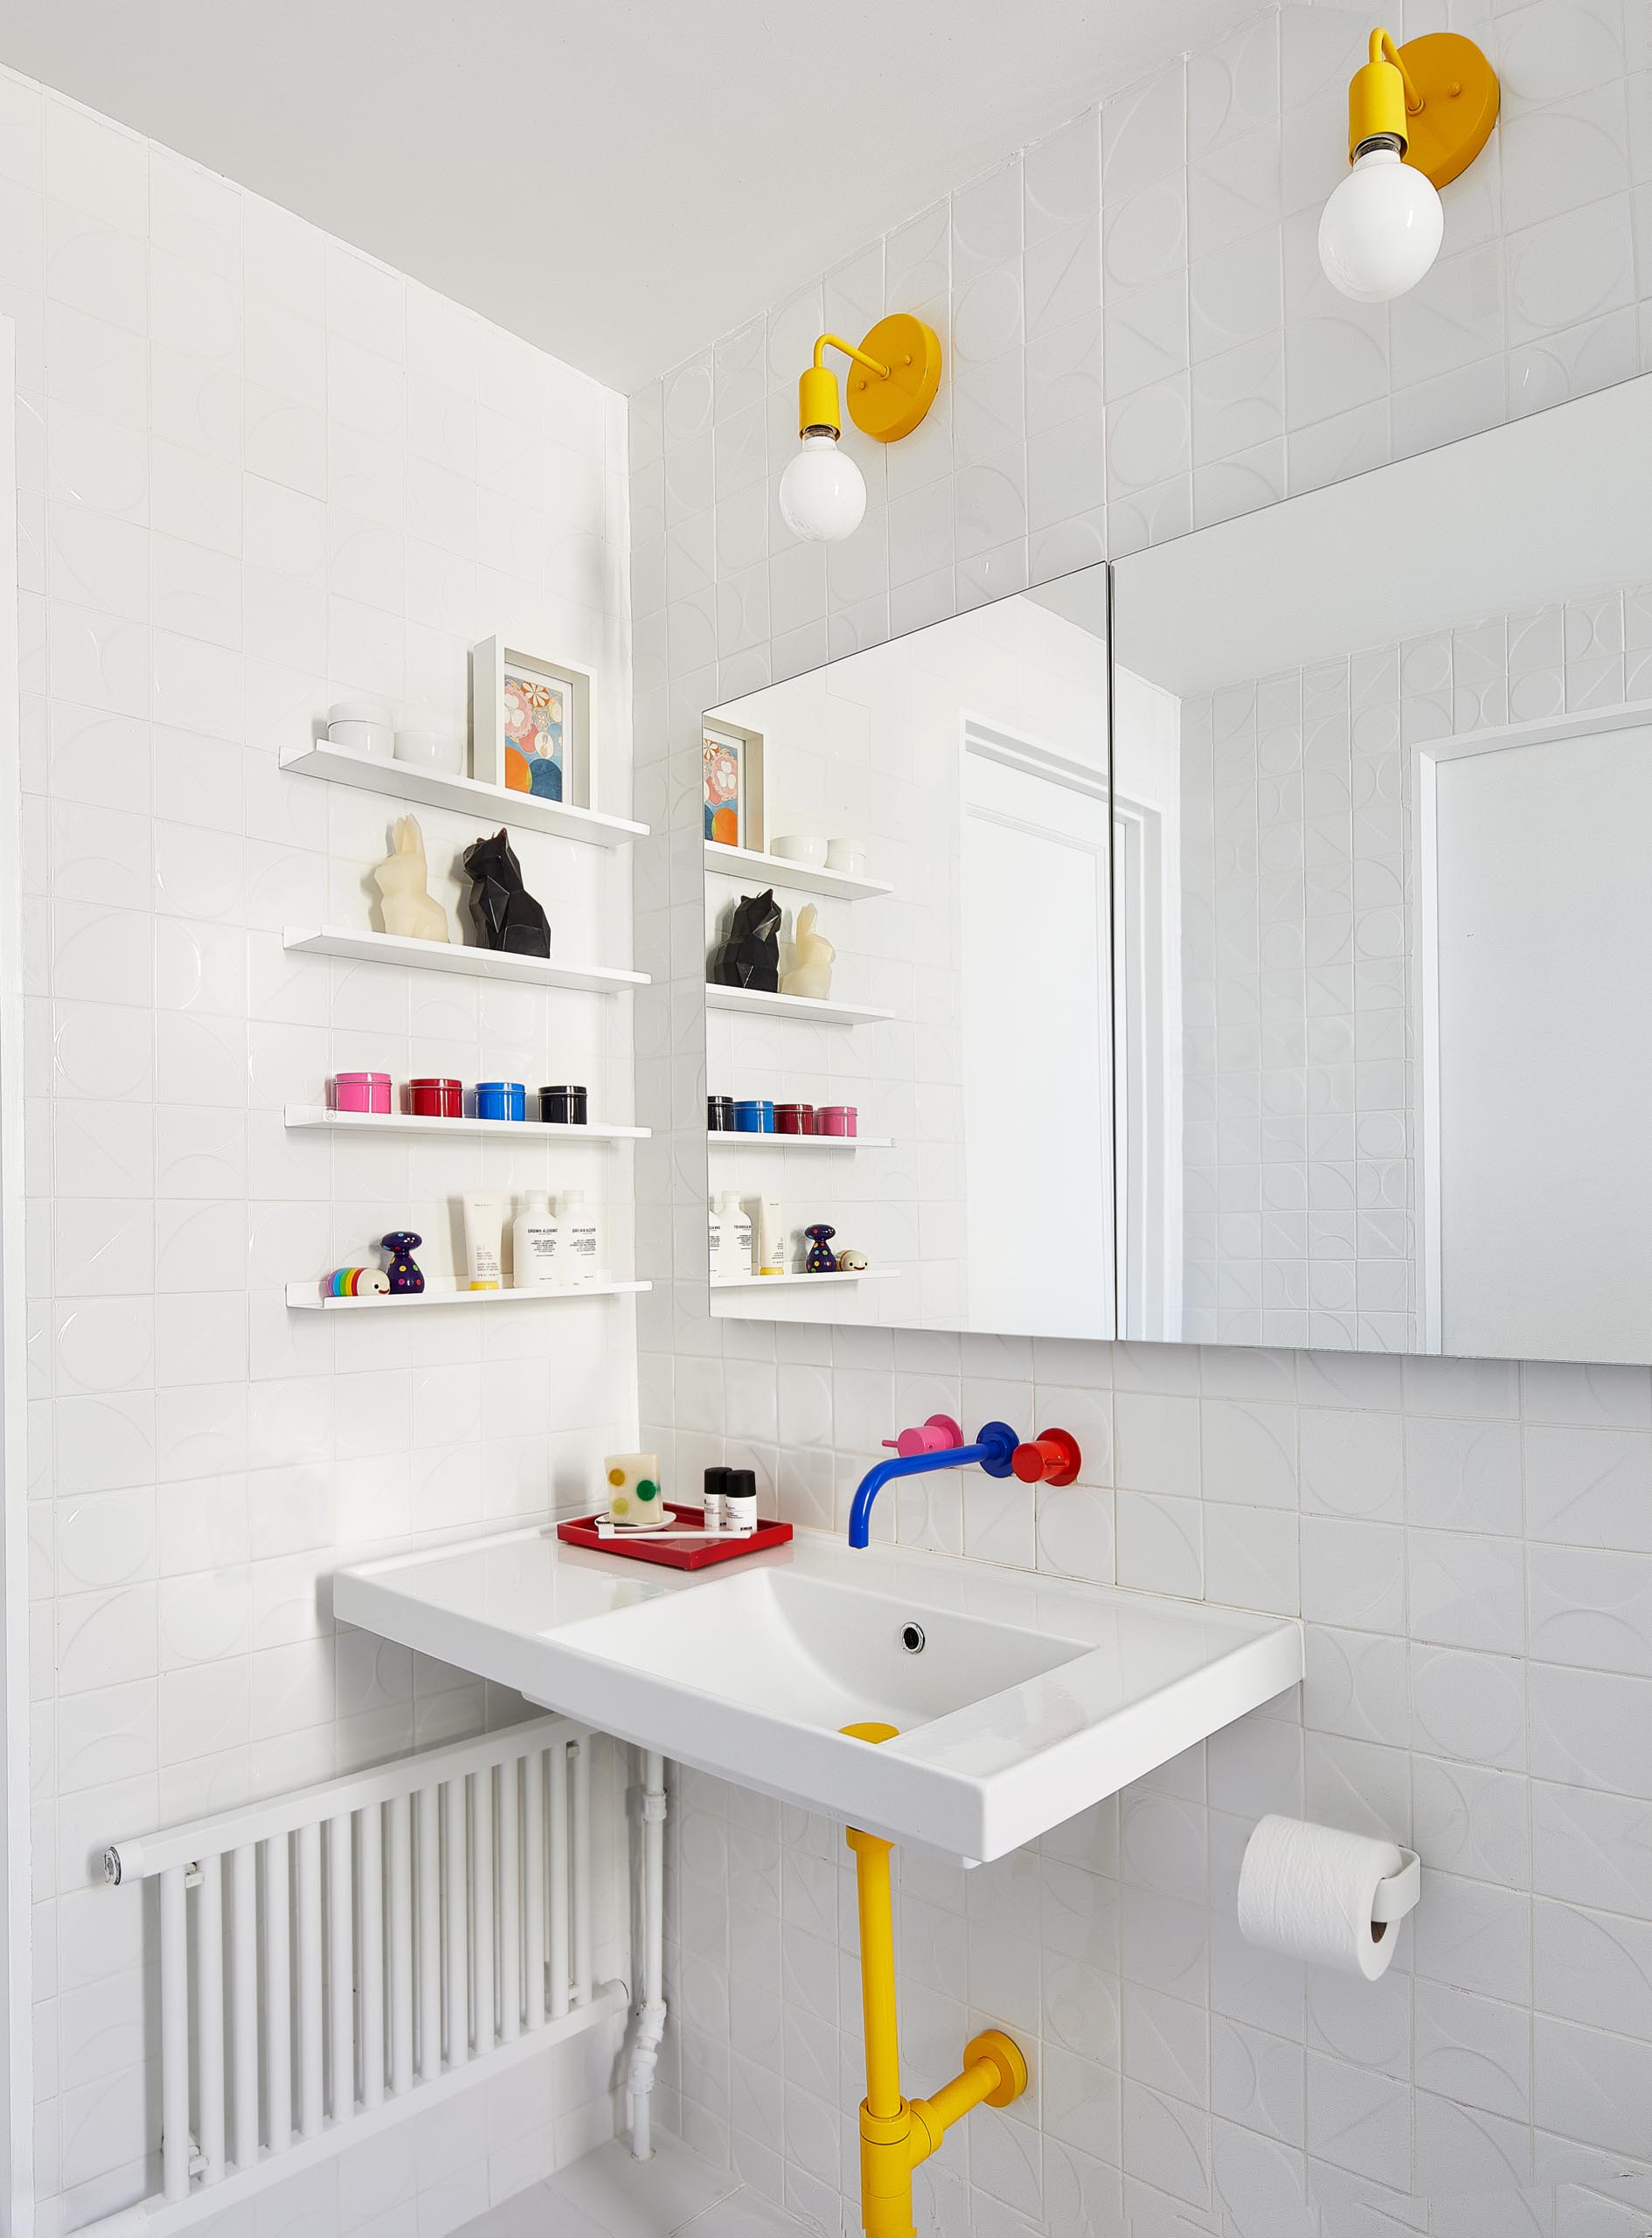 В этой детской ванной комнате смешанная ярко-розовая, желтая и синяя сантехника от VOLA сочетается с объемной настенной плиткой от Kho Liang и желтыми осветительными приборами от Barn Lighting.